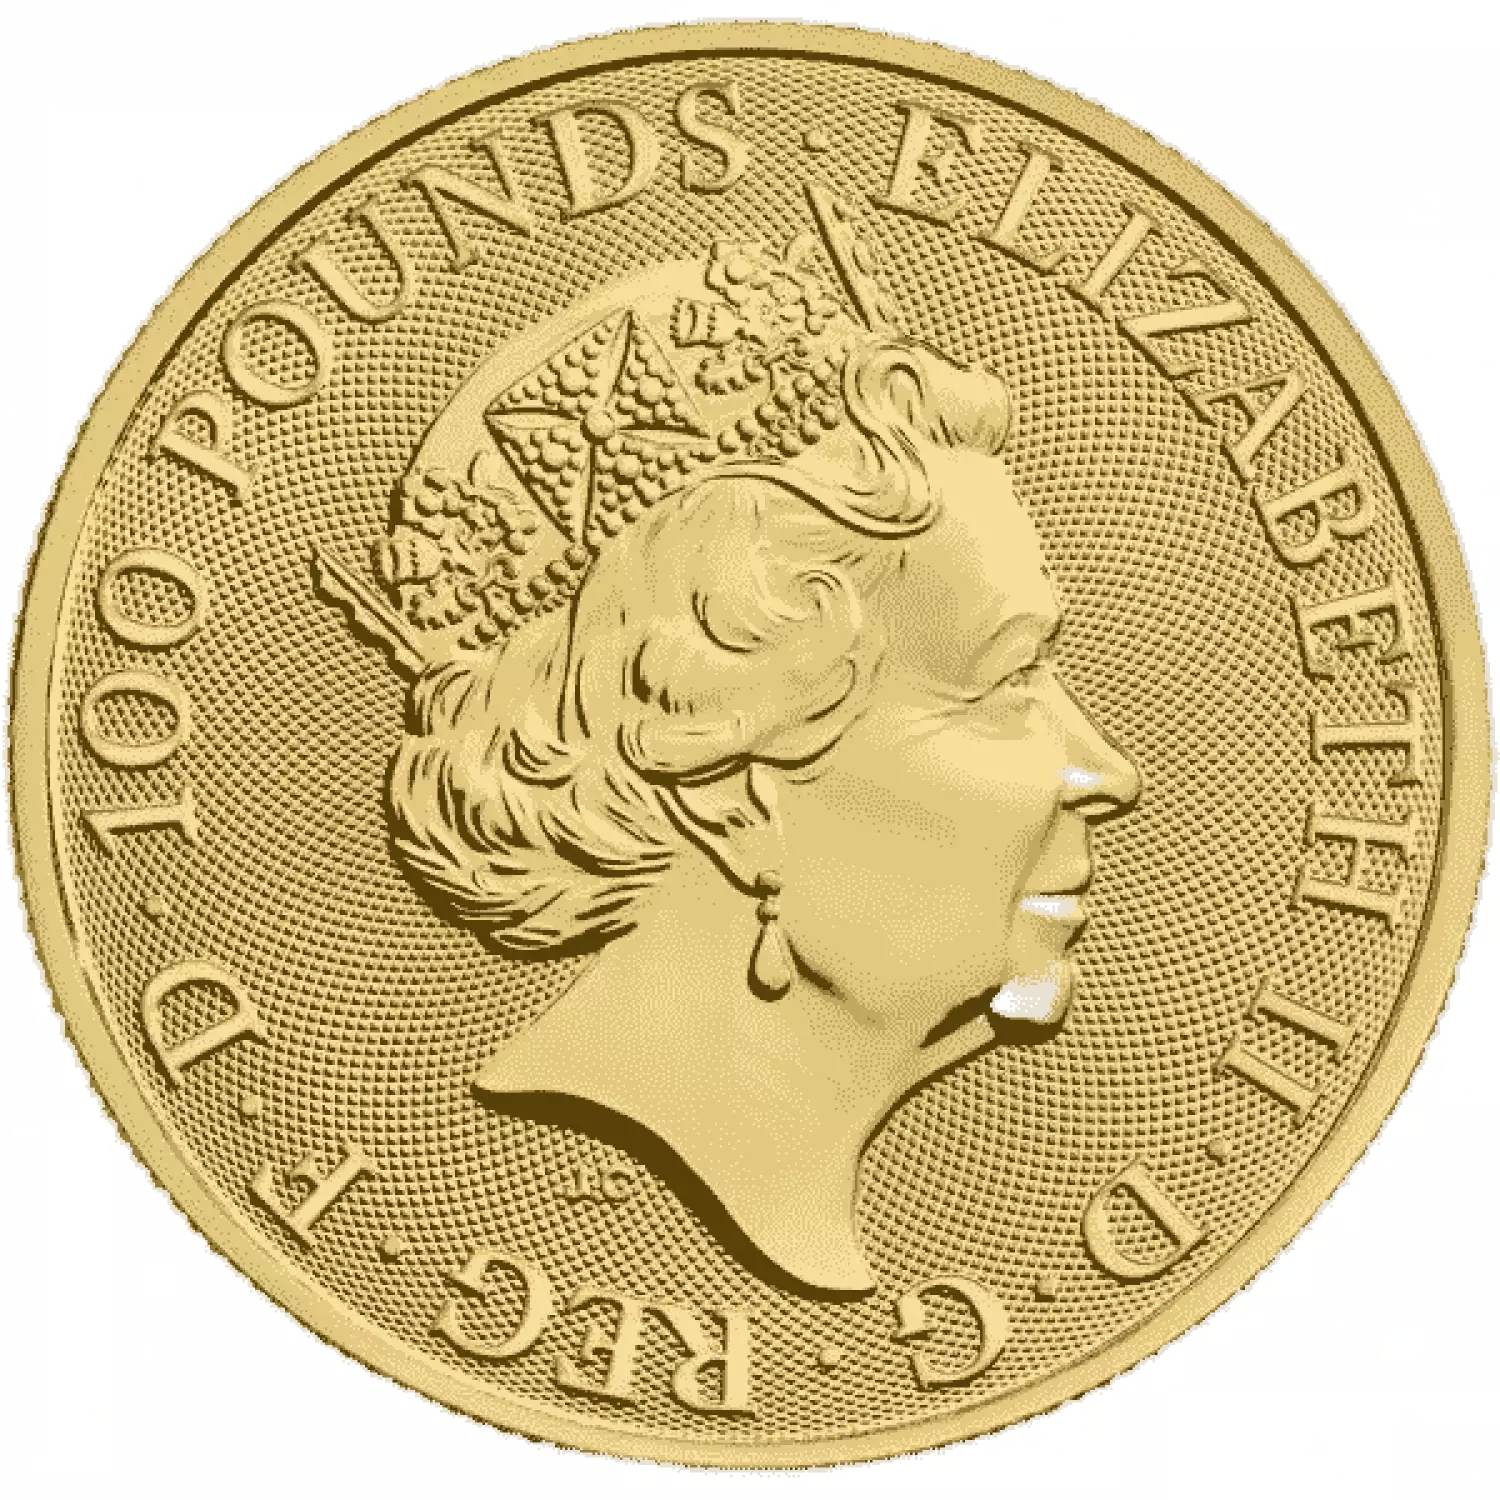 2021 1 oz Gold British Queen's Beasts - Series Completer (3)